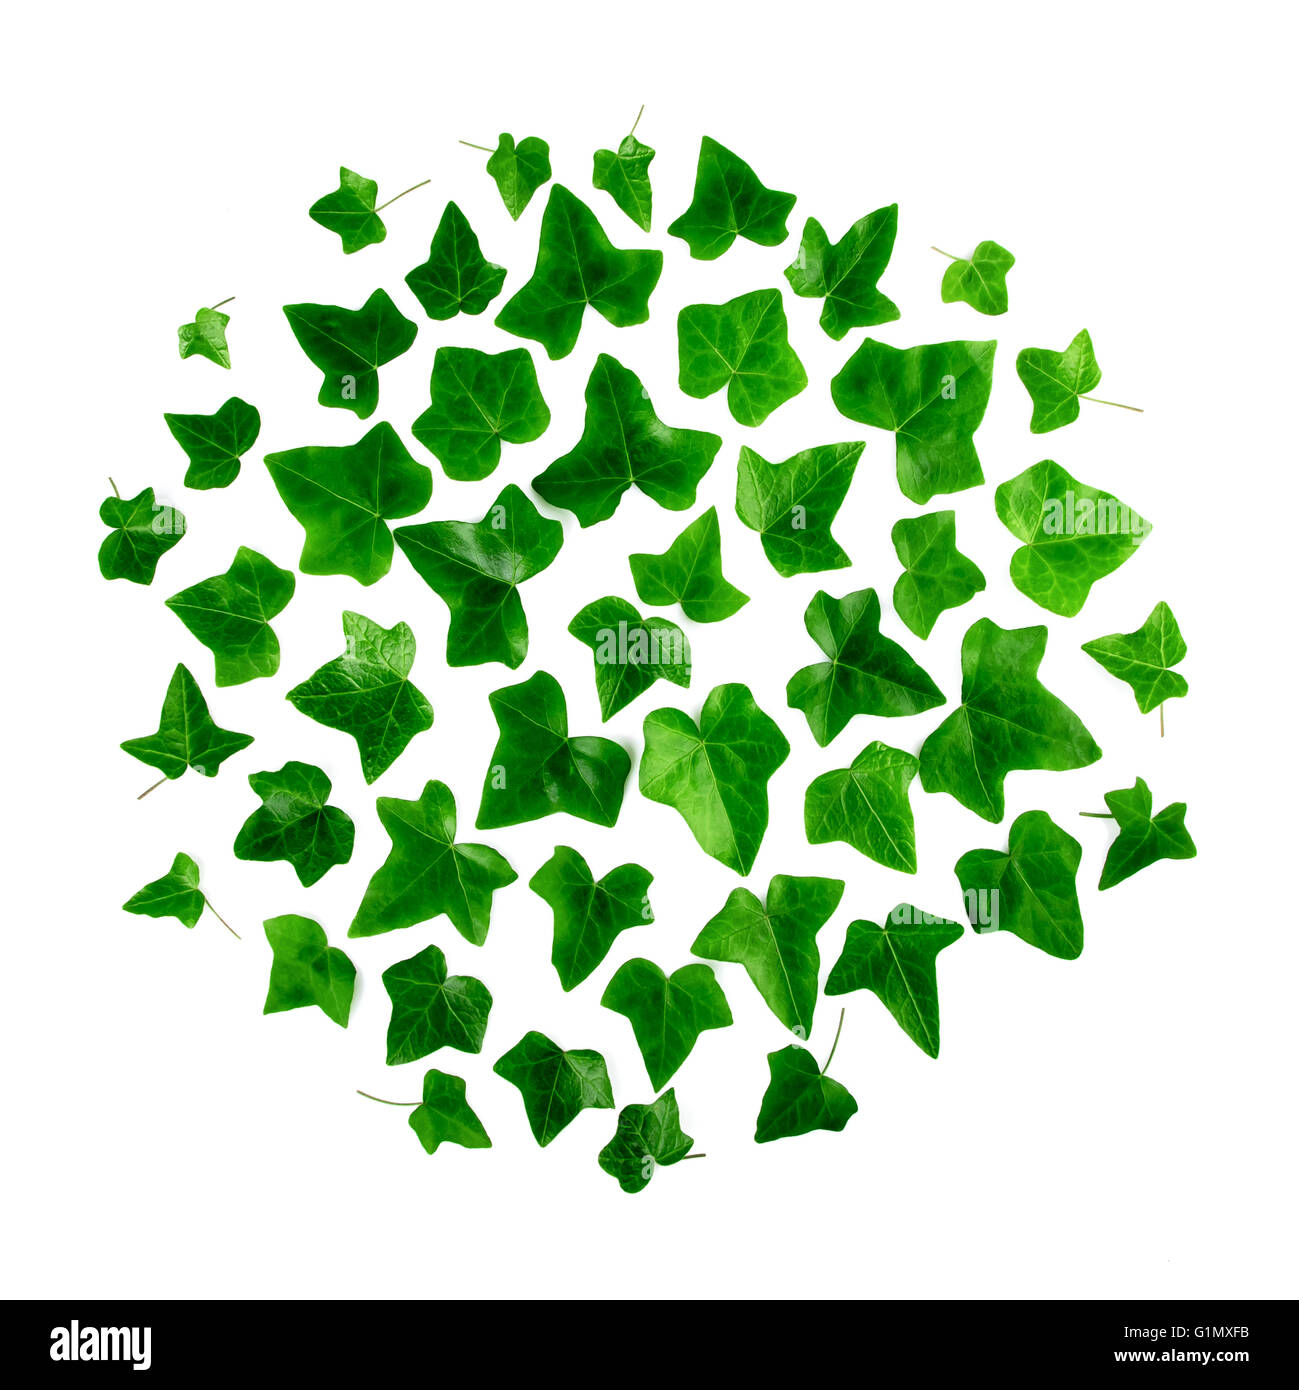 Motif rond vert de feuilles de lierre sur fond blanc. Mise à plat, vue du dessus. Banque D'Images